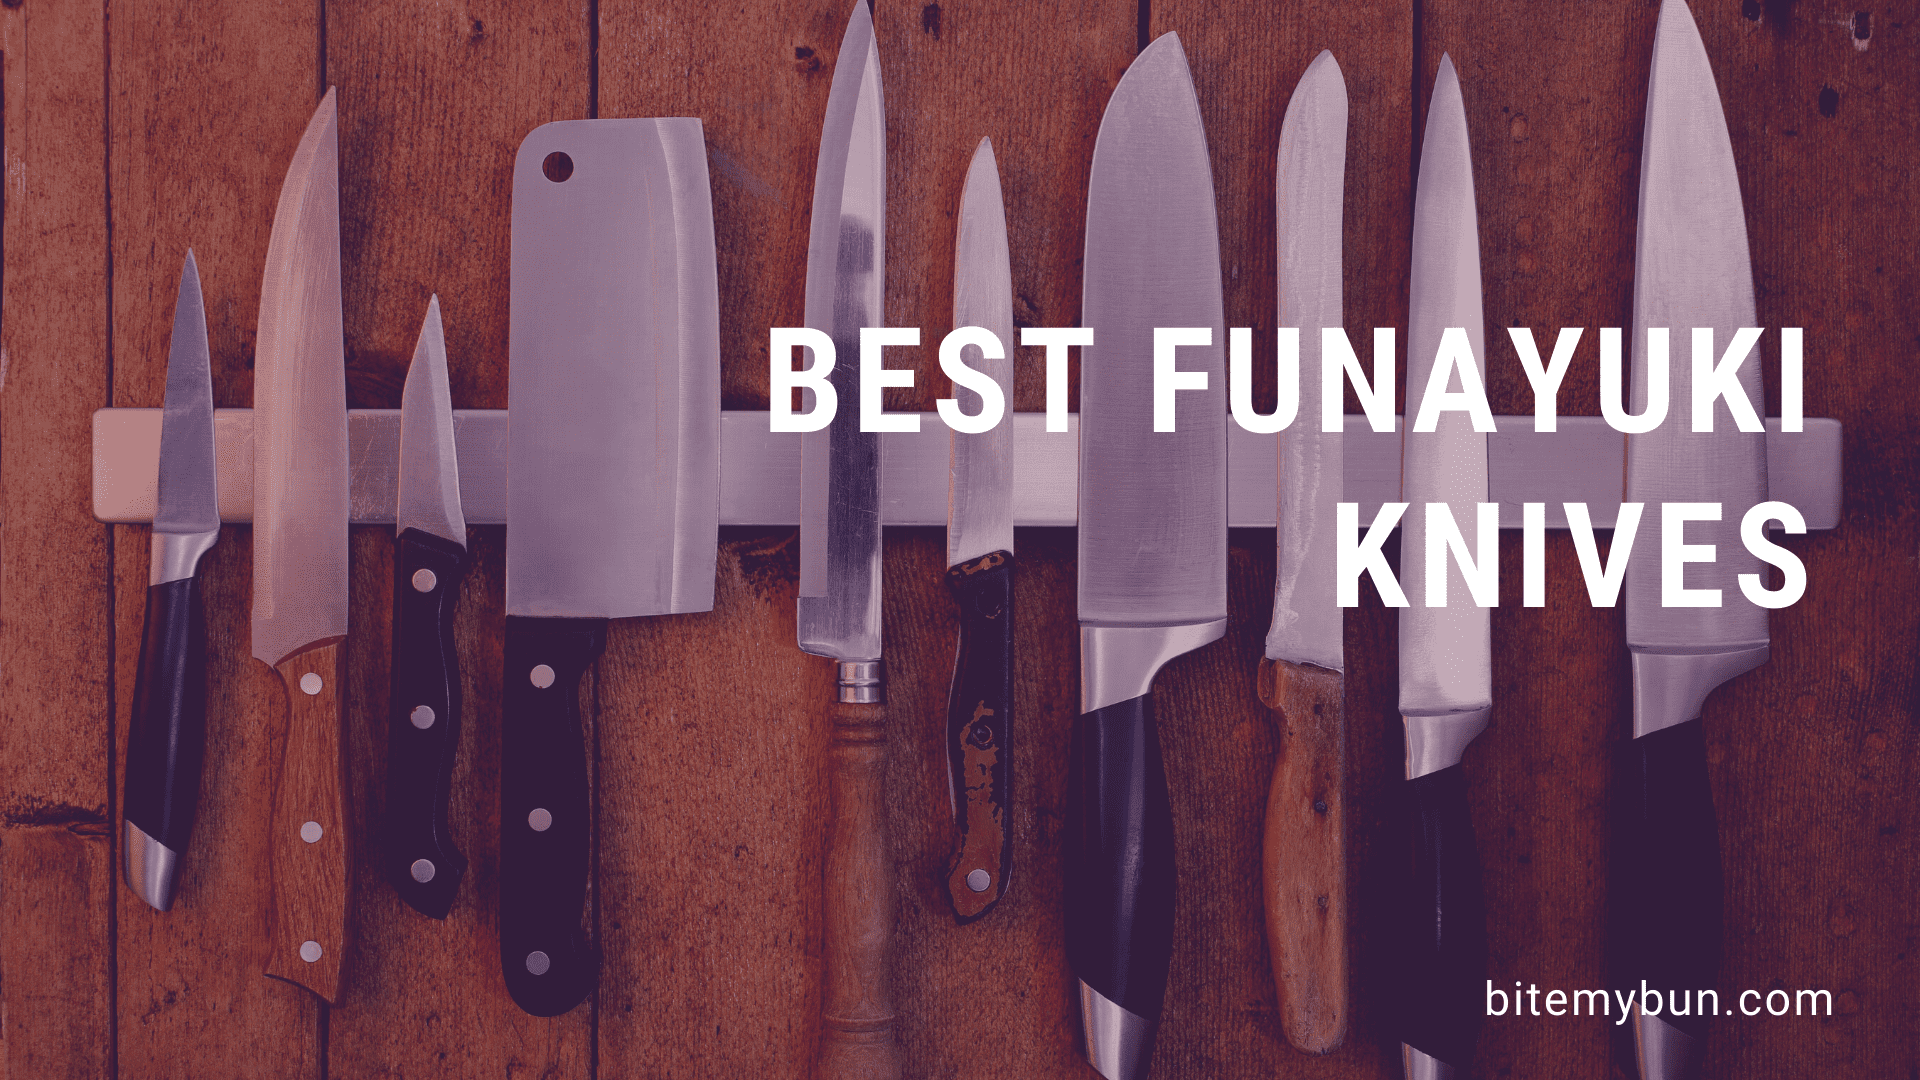 I migliori coltelli funayuki | Il preferito per il taglio del pesce giapponese [top 5 recensiti]